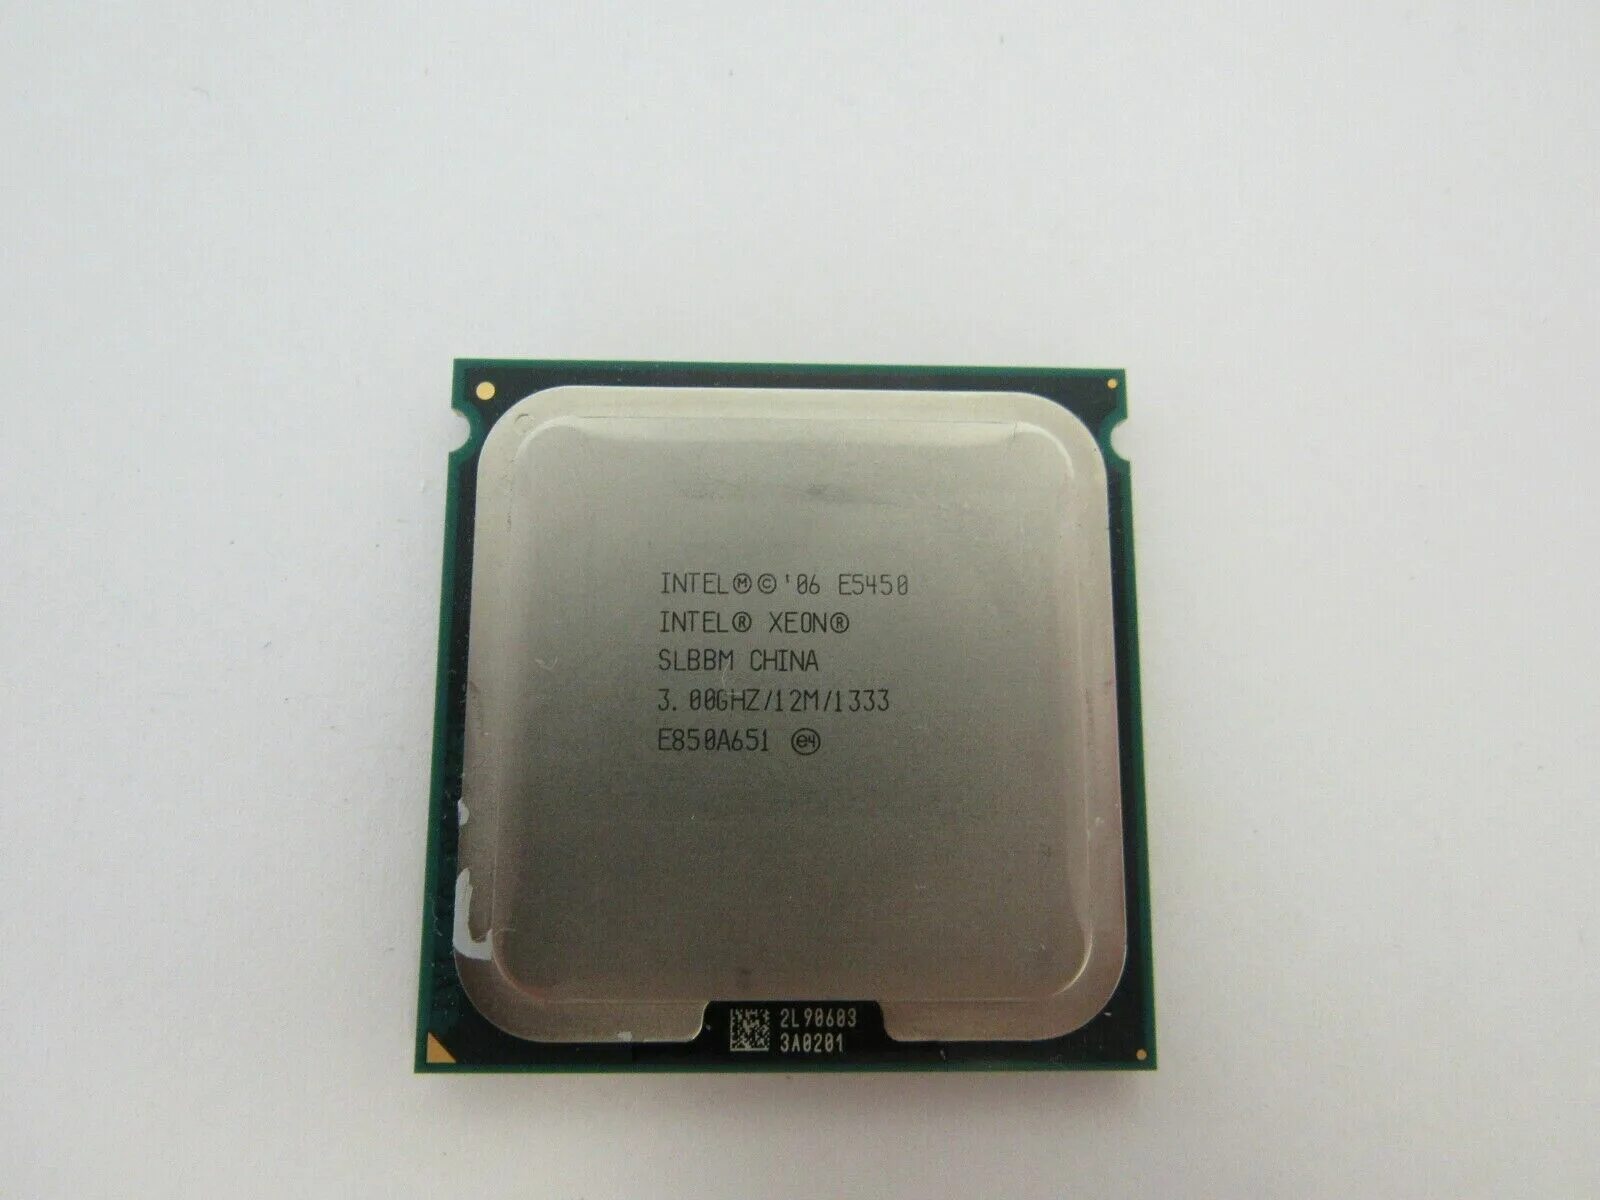 Intel Core 2 Quad q9300. Процессор Intel Core 2 Duo e4700. Intel 06 e5400 Pentium. Процессор Intel Pentium 4 531 Prescott.